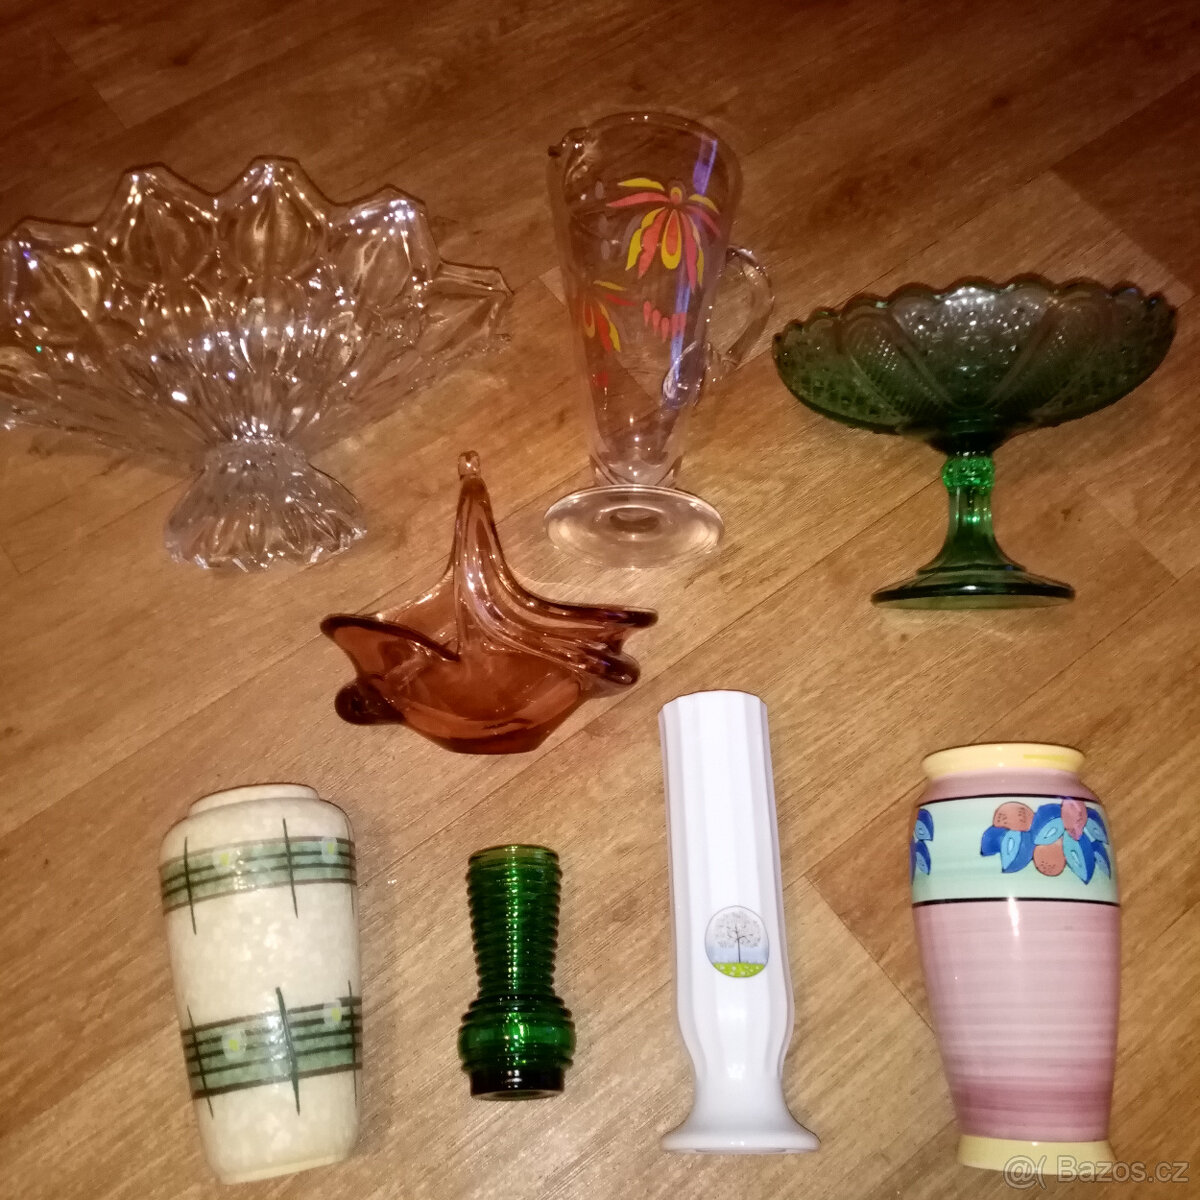 Prodám staré skleněné a keramické vázy, mísy a nástolník